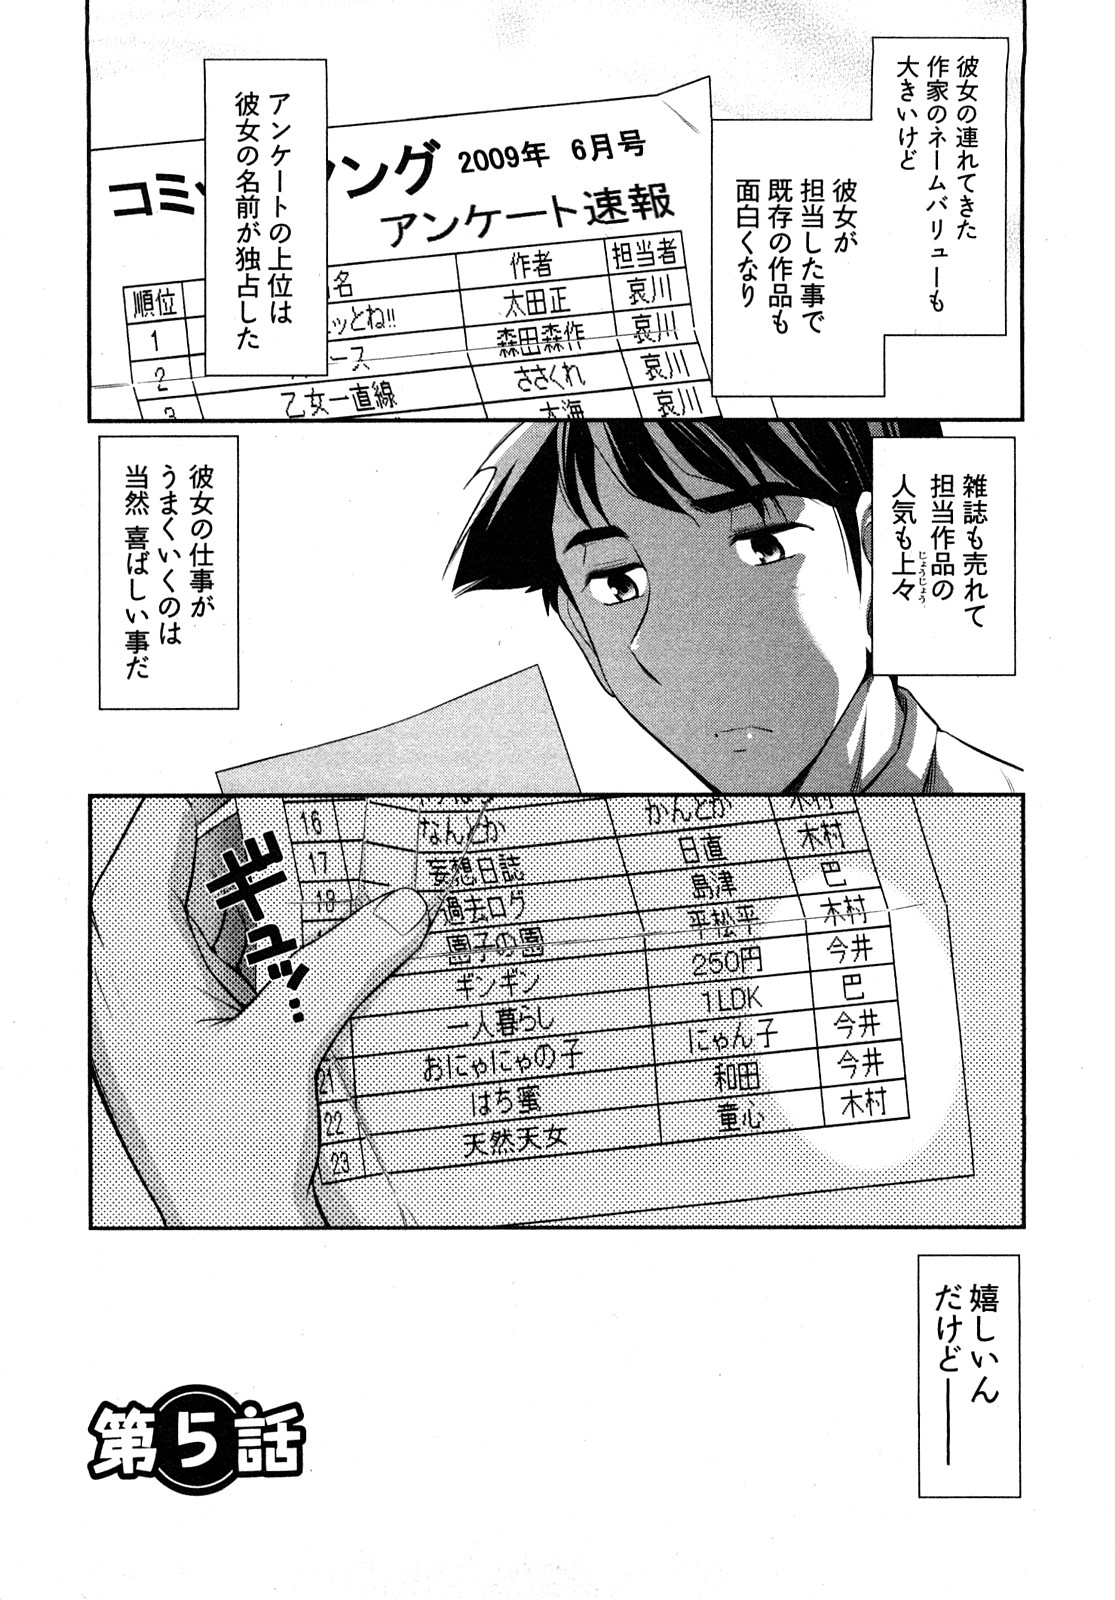 [Ohmi Takeshi] Gekkan Aikawa Henshuuchou - Monthly "Aikawa" The Chief Editor 1 96